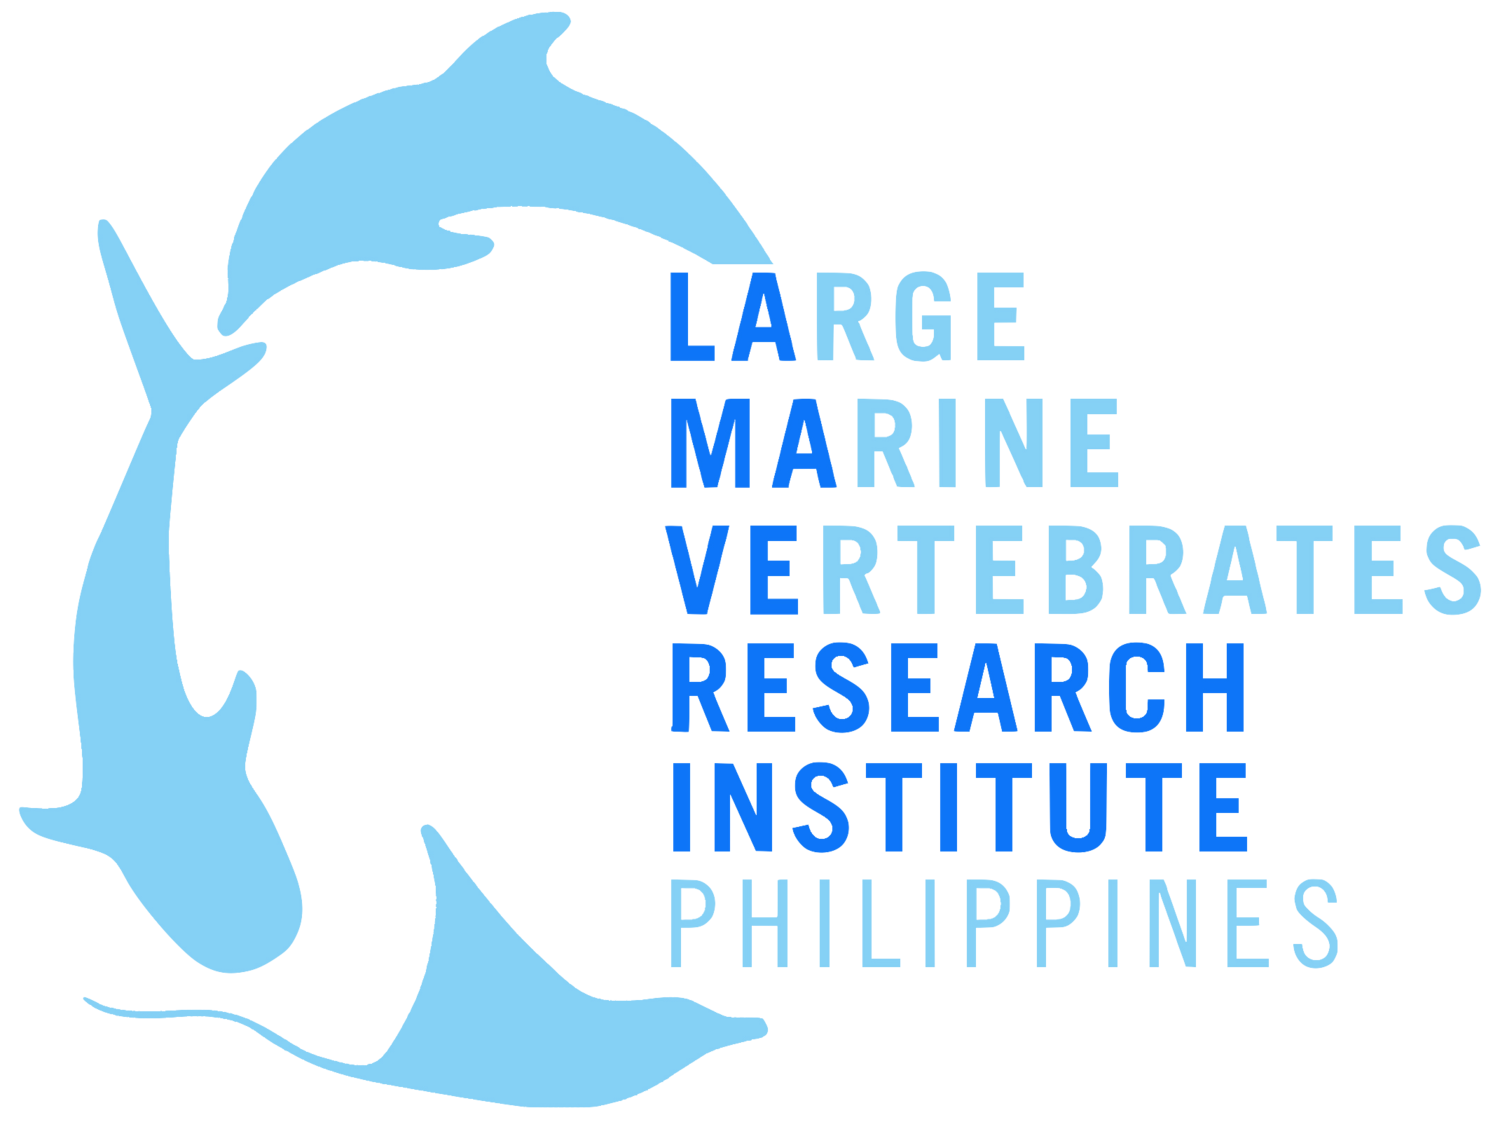 Large Marine Vertebrates Research Institute Philippines 